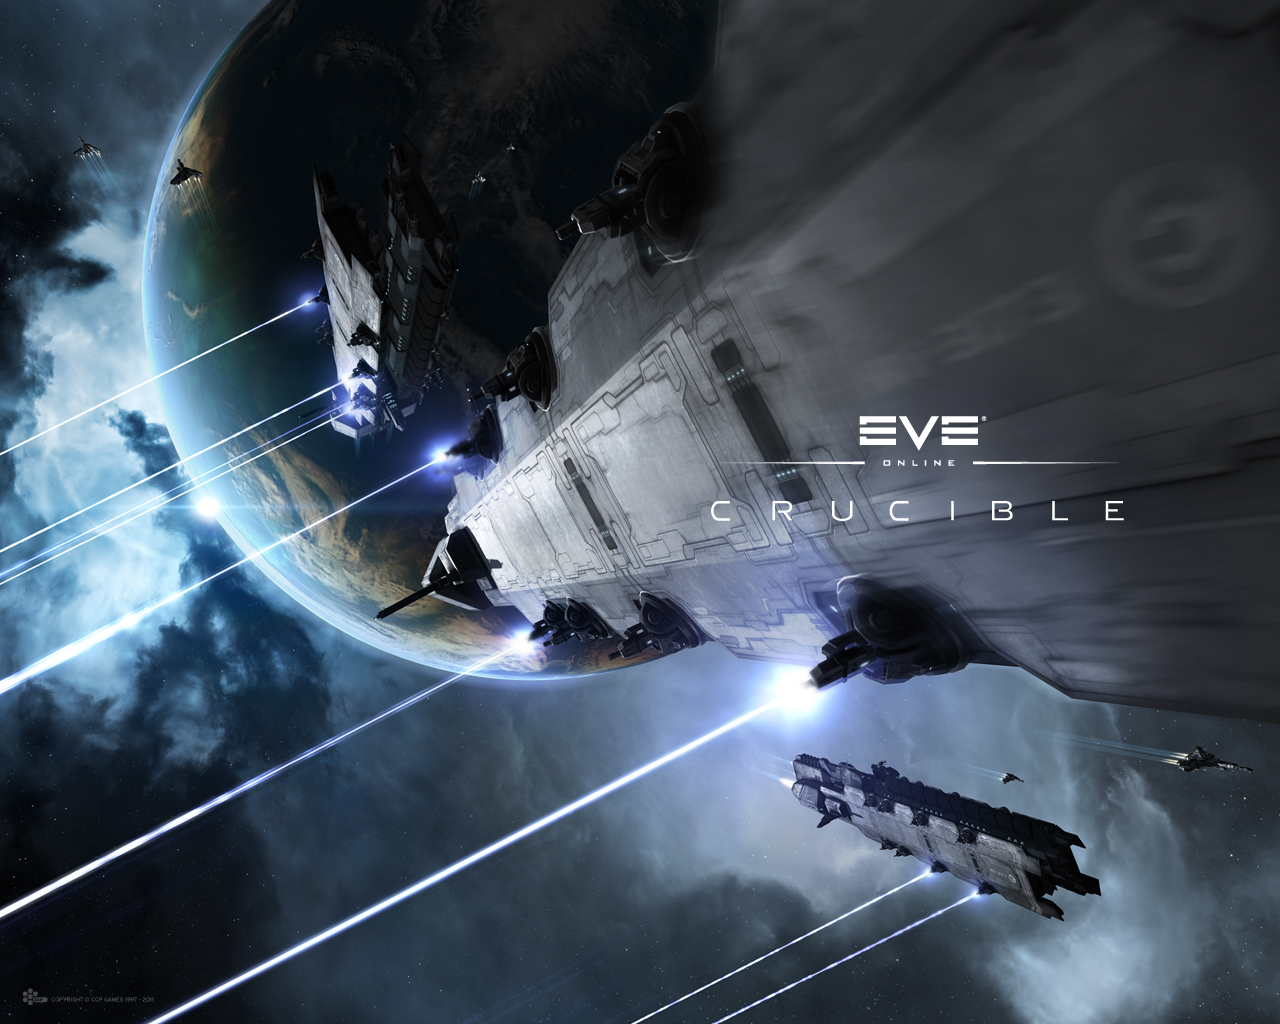 Скачать обои Eve Online: Горнило на телефон бесплатно